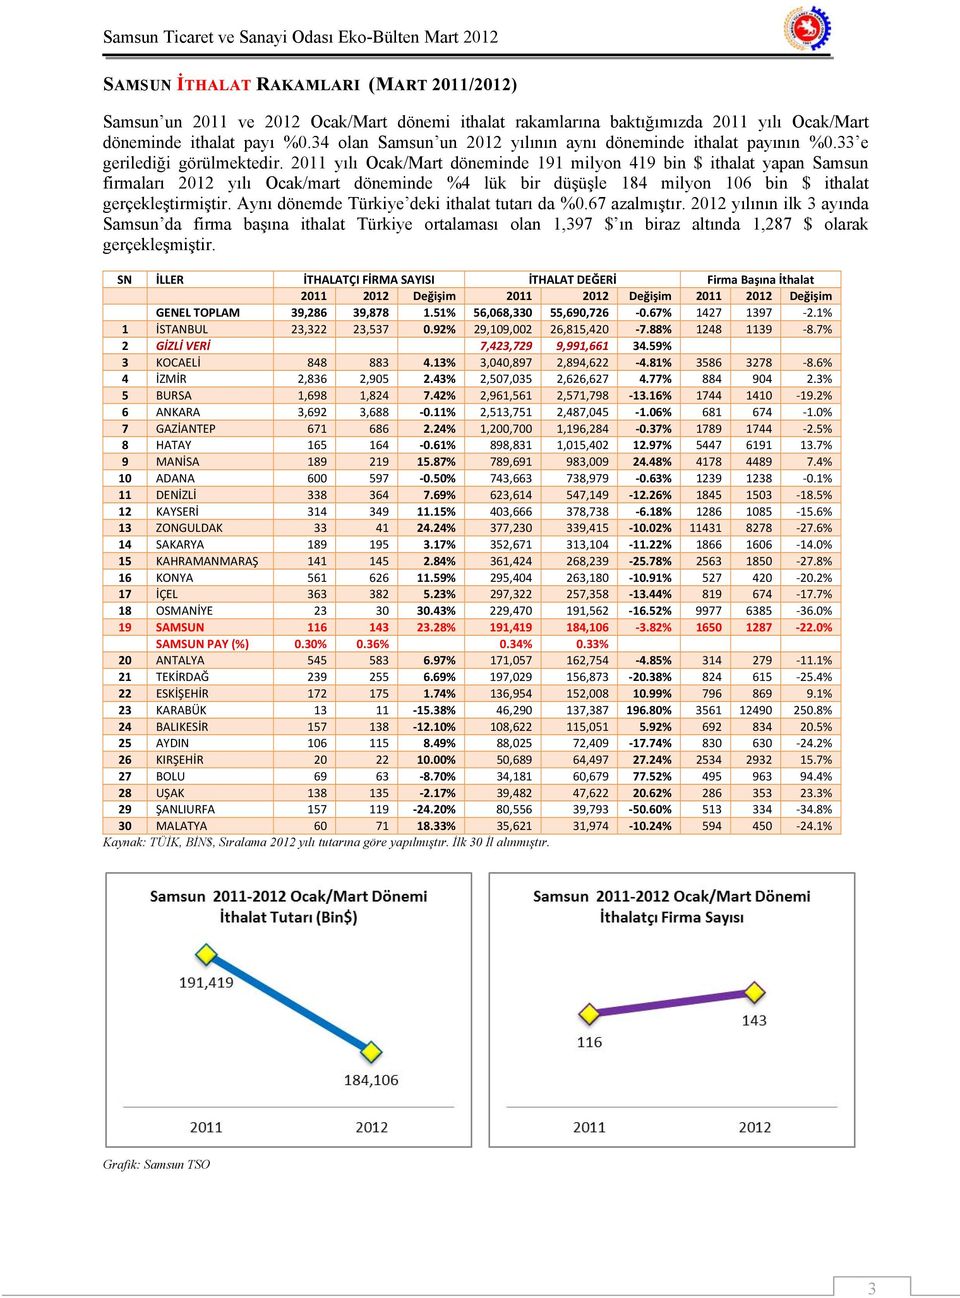 2011 yılı Ocak/Mart döneminde 191 milyon 419 bin $ ithalat yapan Samsun firmaları 2012 yılı Ocak/mart döneminde %4 lük bir düşüşle 184 milyon 106 bin $ ithalat gerçekleştirmiştir.